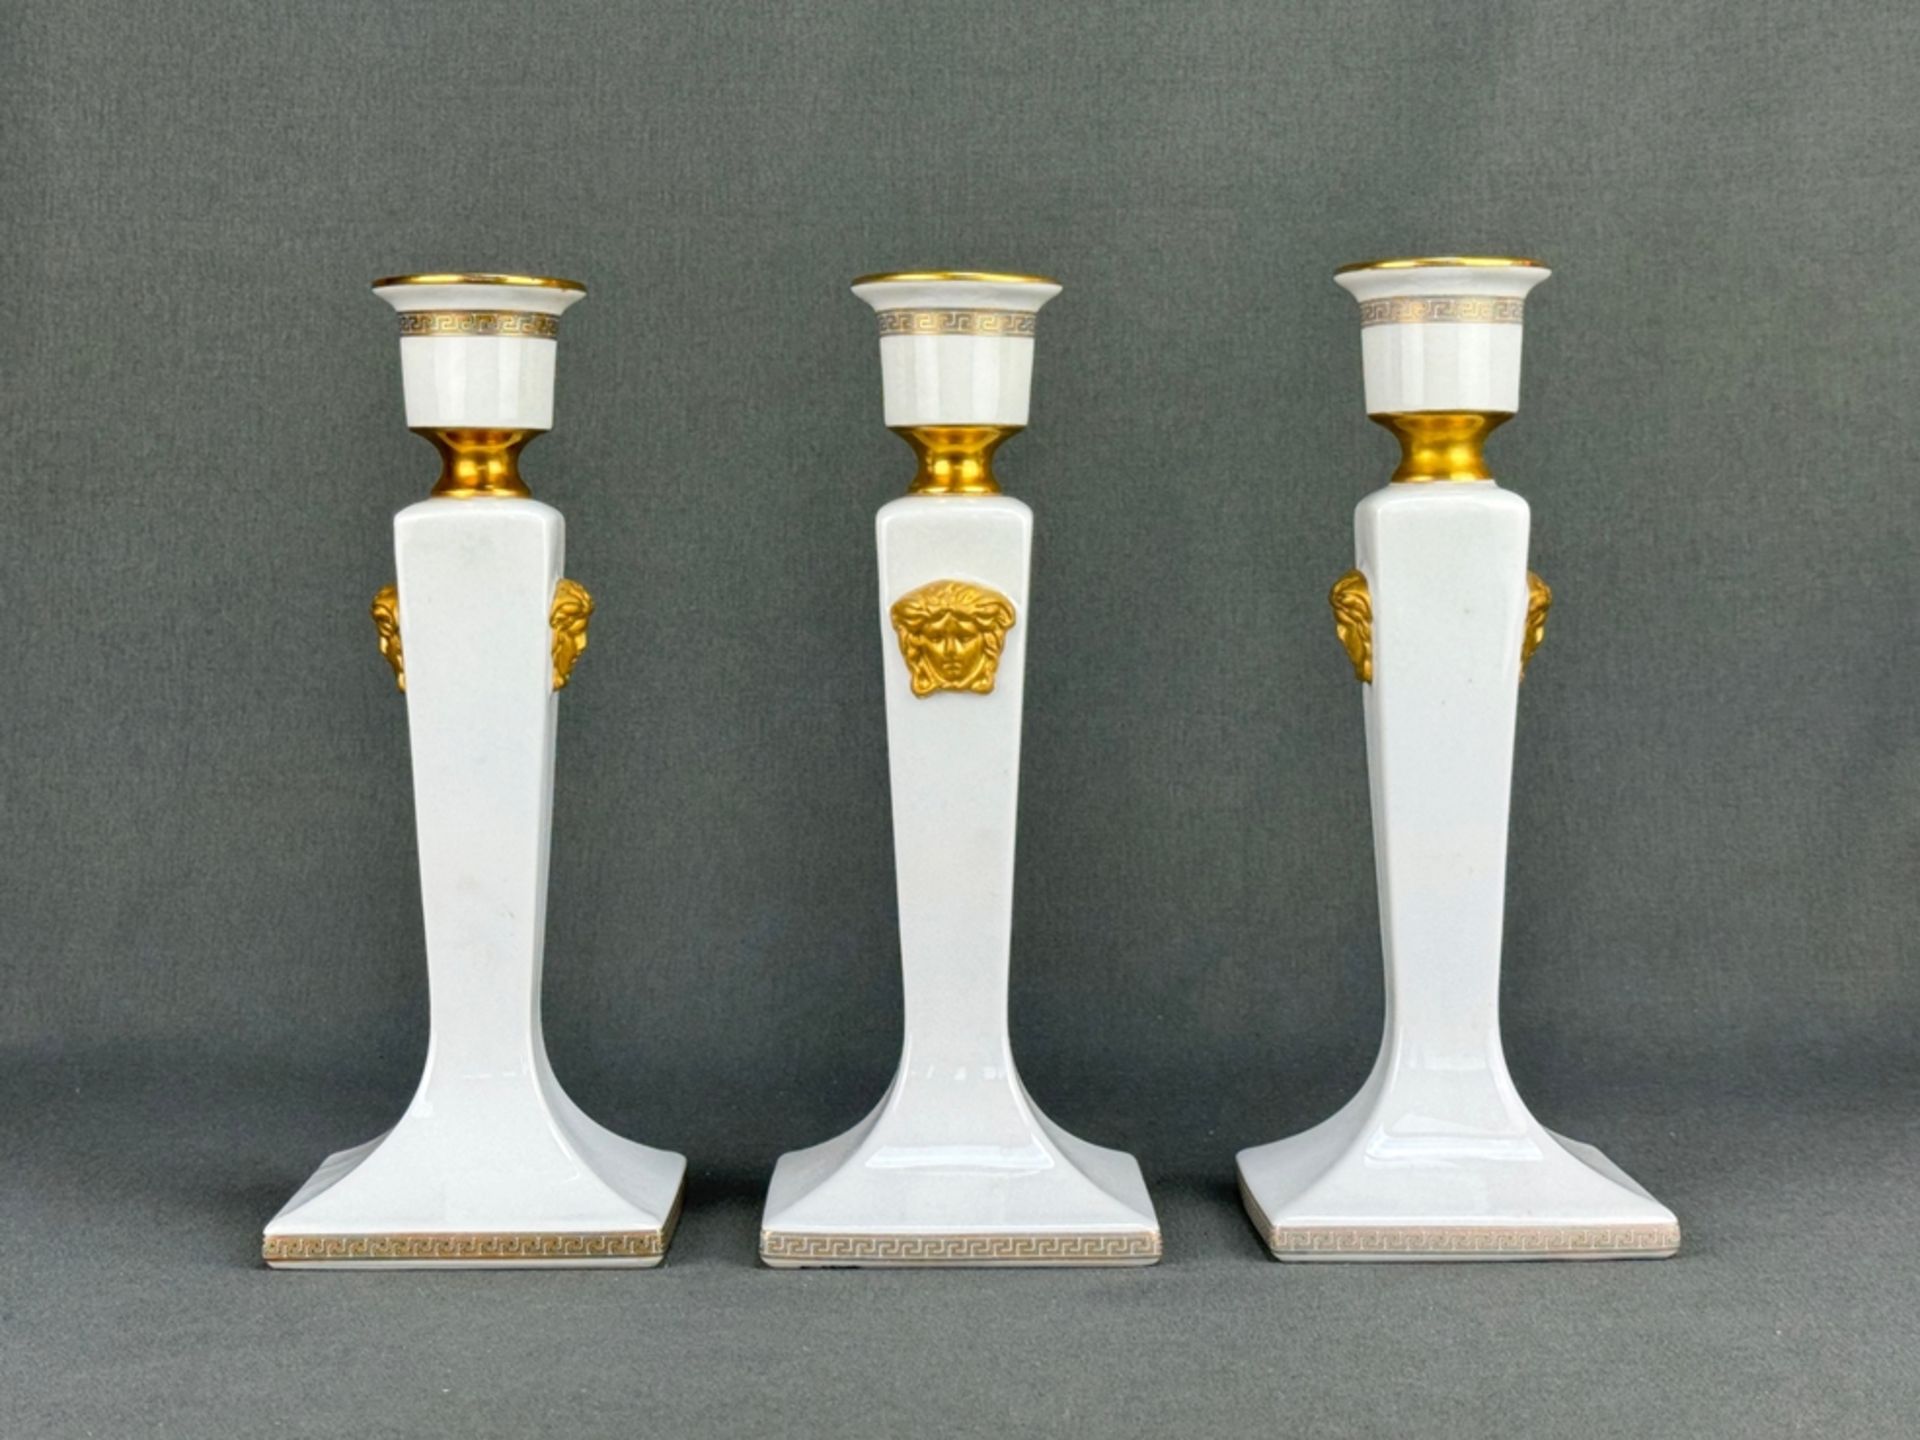 Drei Kerzenhalter, Rosenthal, Entwurf Versace, Dekor "Gorgona", goldene Bodenmarke, jeweils Weiß-Po